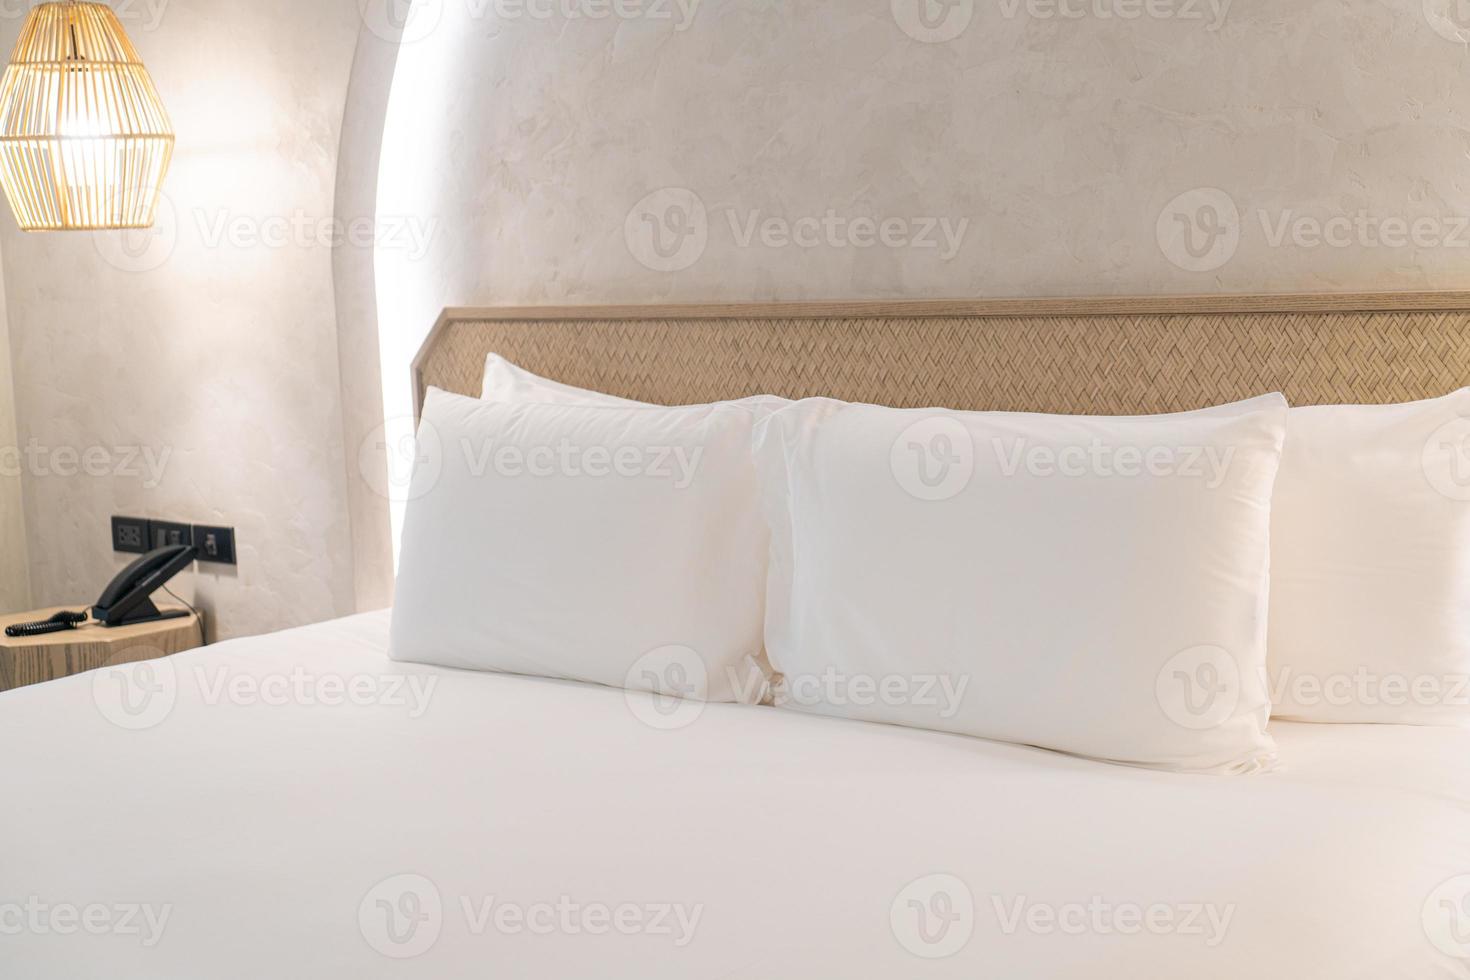 comodi cuscini bianchi sul letto foto